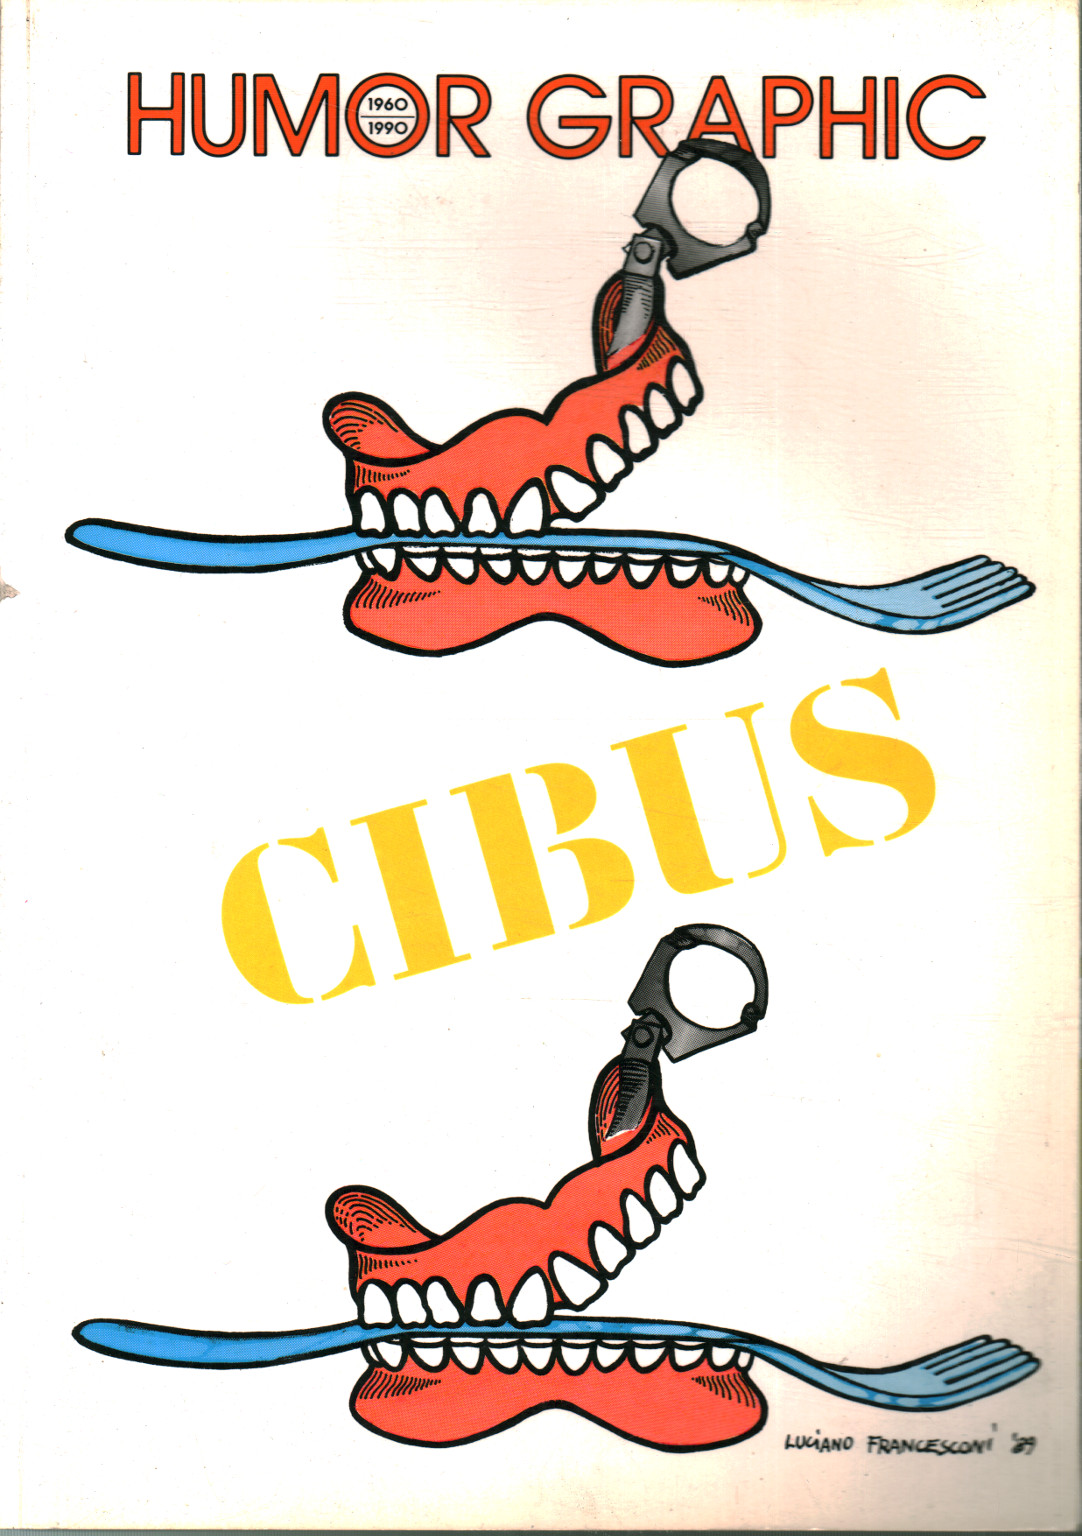 Humorgrafik (1960-1990 Nr. 29) Cibus,Humorgrafik (1960-1990 Nr.29) Cibus